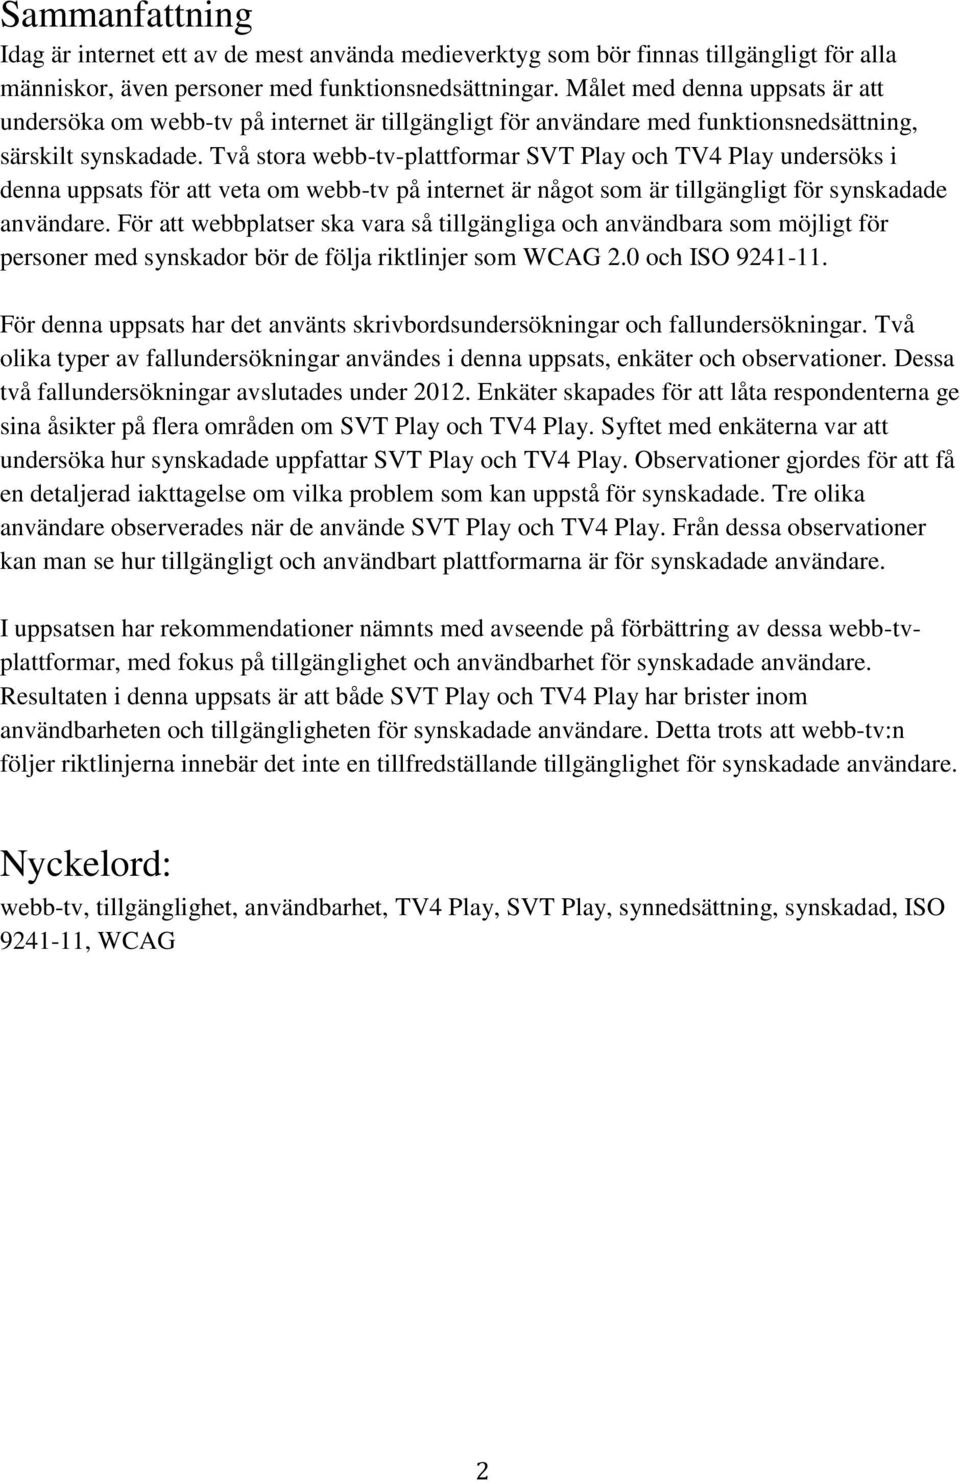 Två stora webb-tv-plattformar SVT Play och TV4 Play undersöks i denna uppsats för att veta om webb-tv på internet är något som är tillgängligt för synskadade användare.